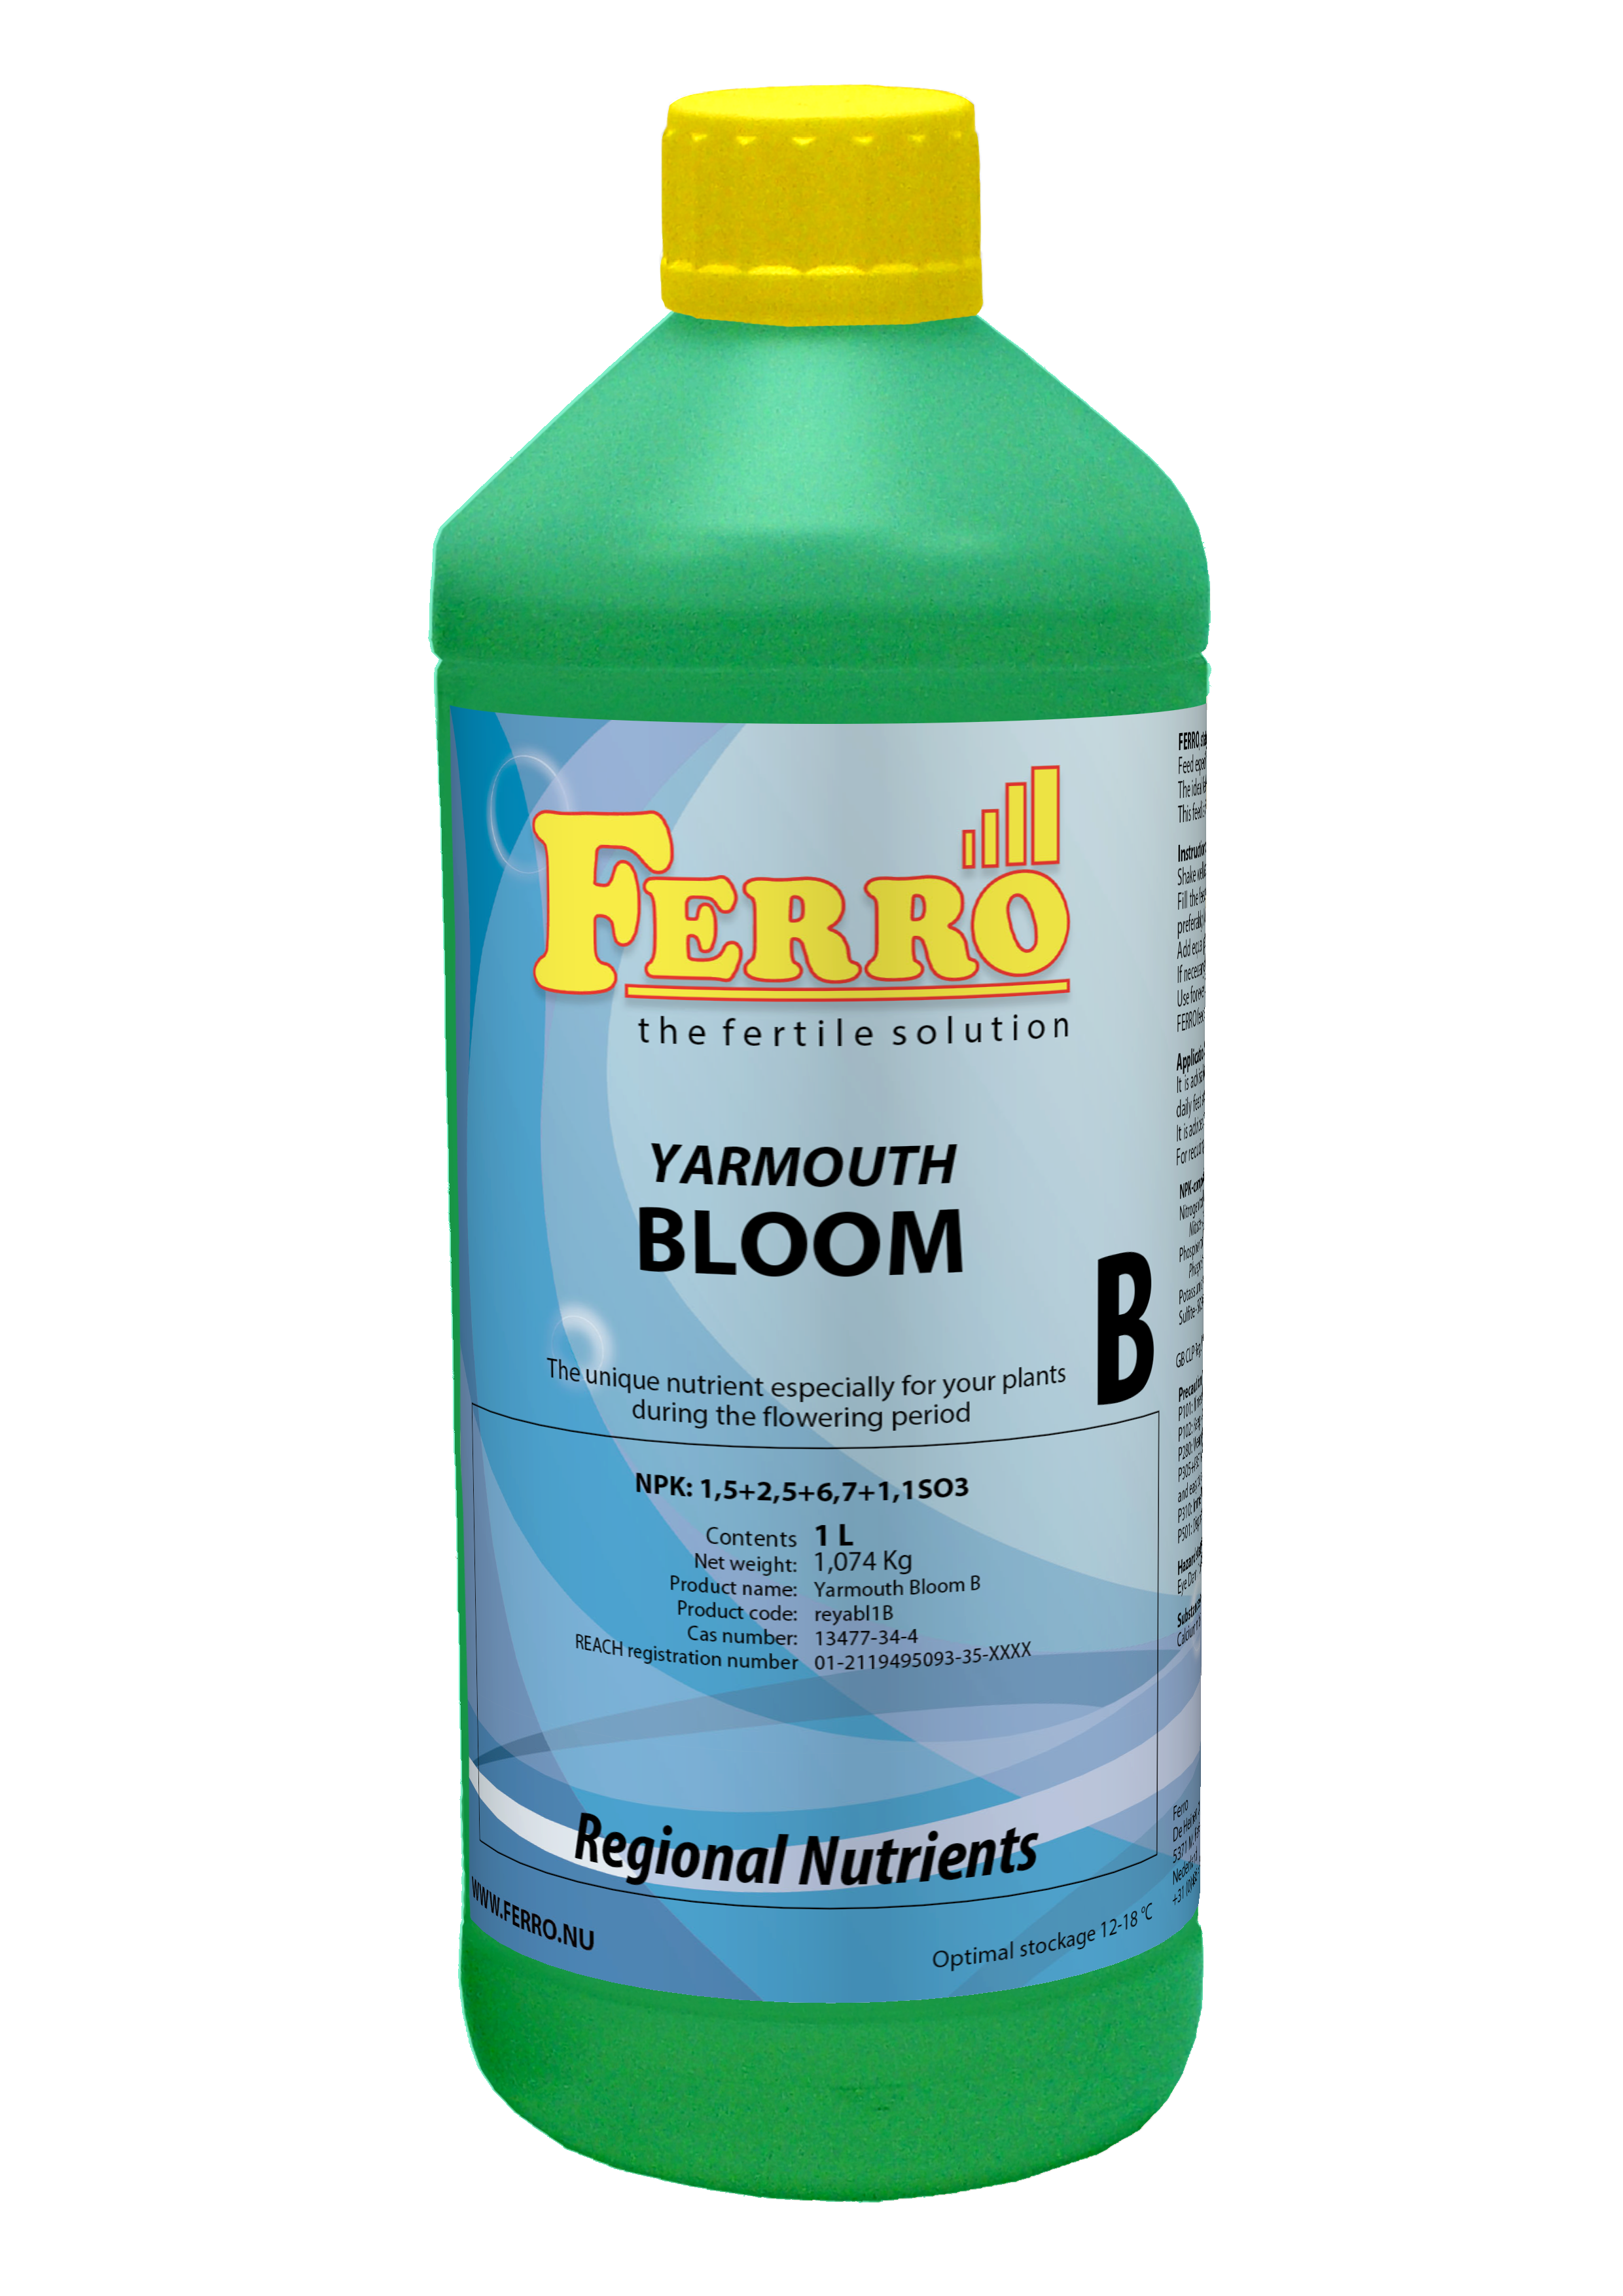 Ferro Bloom Yarmouth A & B Nutrient Set